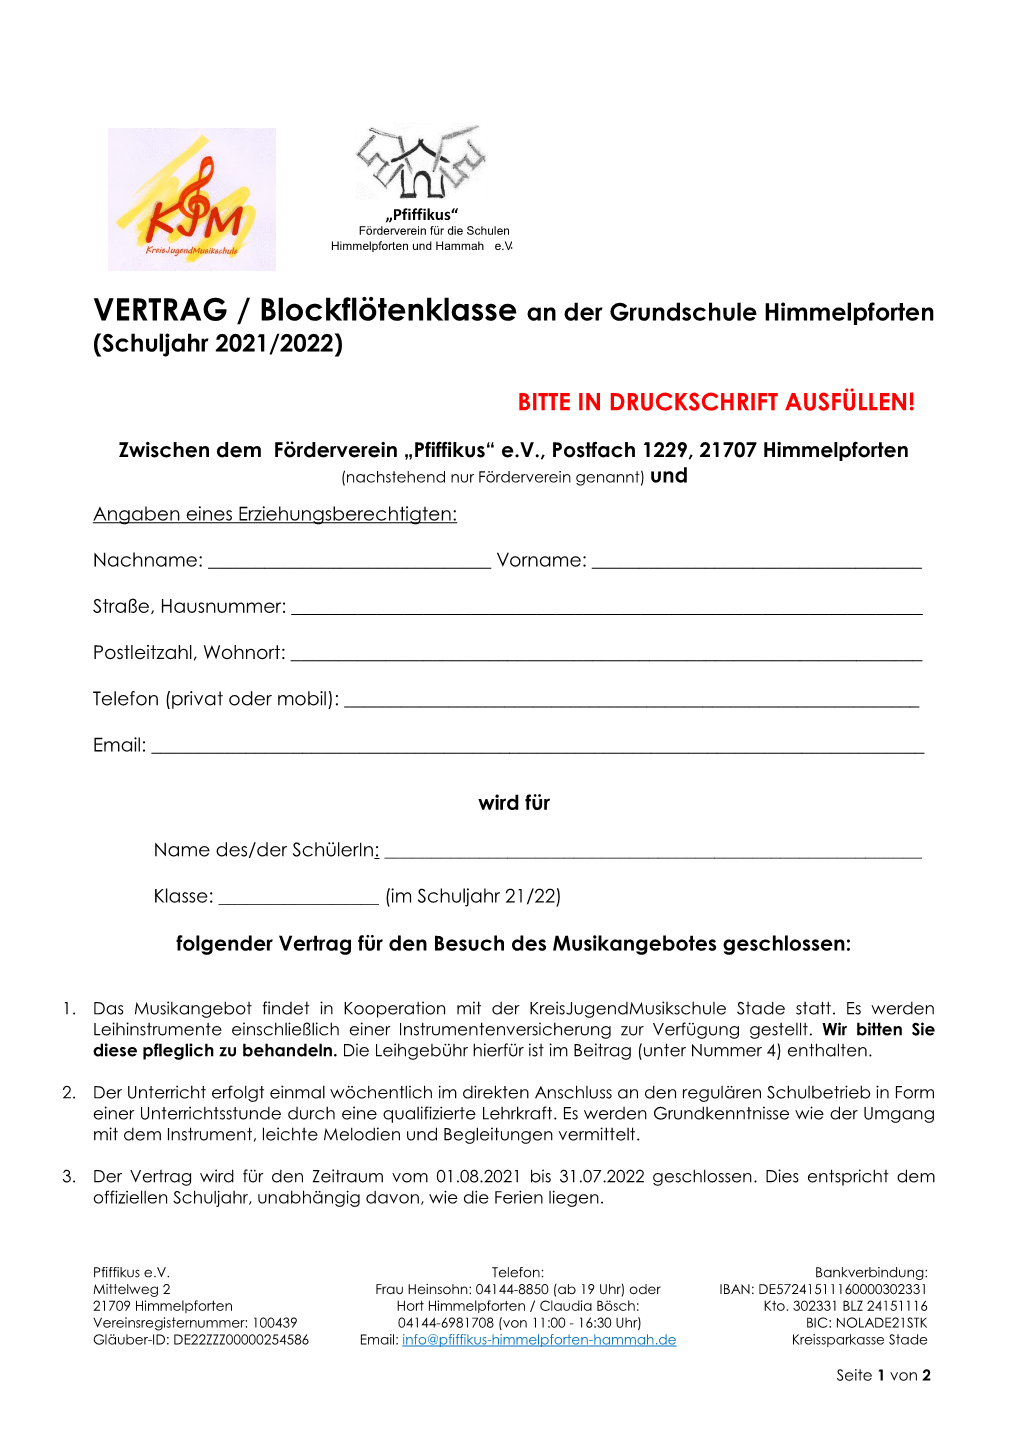 VERTRAG / Blockflötenklasse an Der Grundschule Himmelpforten (Schuljahr 2021/2022) BITTE in DRUCKSCHRIFT AUSFÜLLEN!